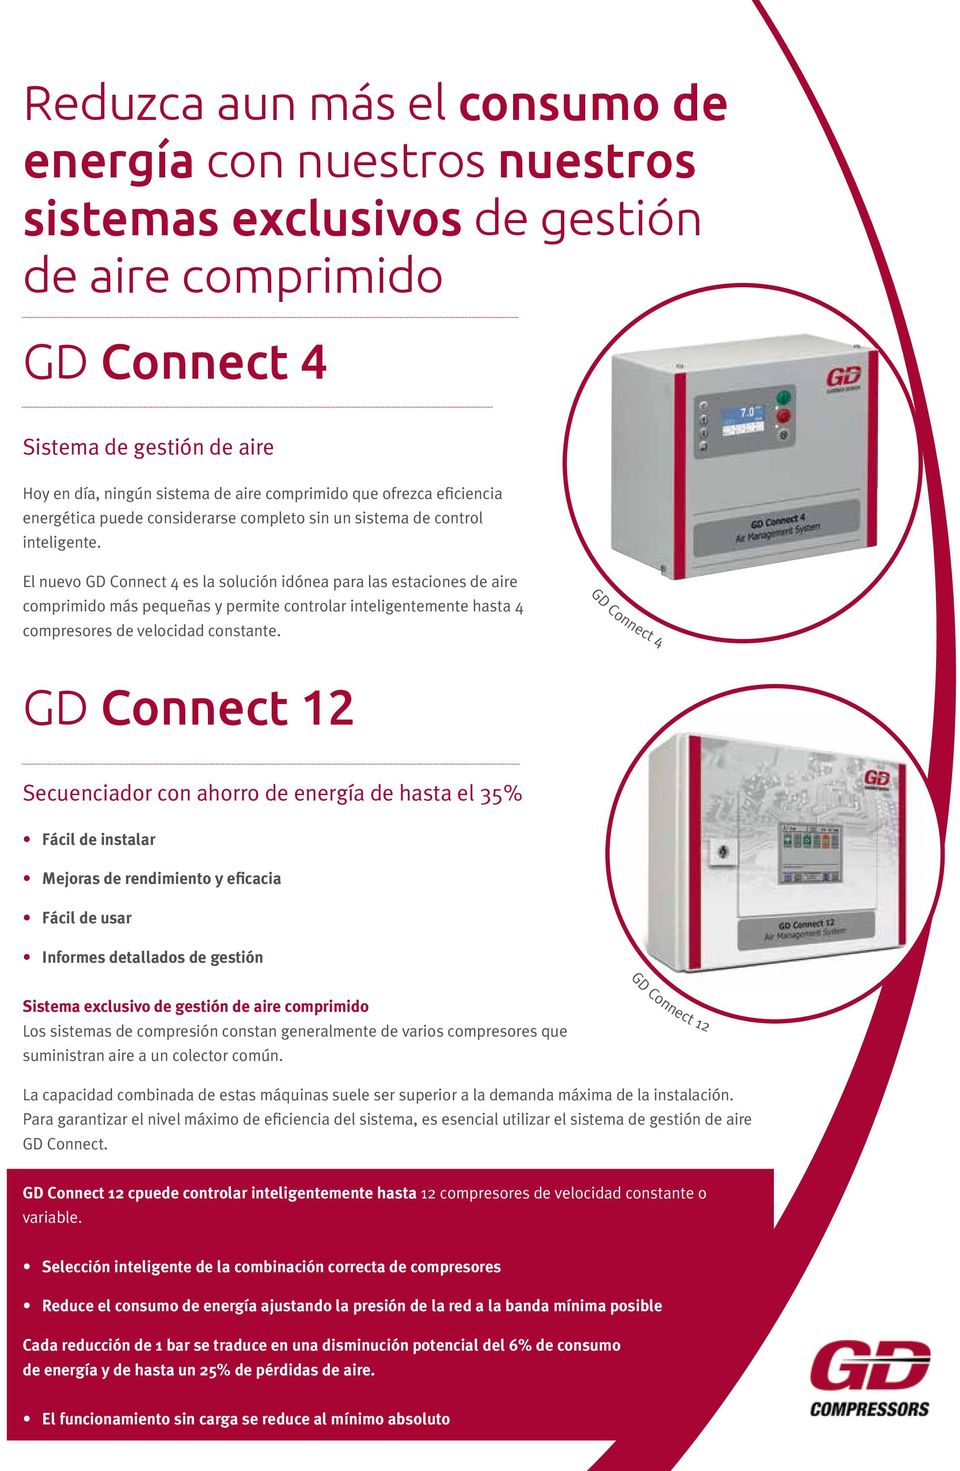 El nuevo GD Connect 4 es la solución idónea para las estaciones de aire comprimido más pequeñas y permite controlar inteligentemente hasta 4 compresores de velocidad constante.